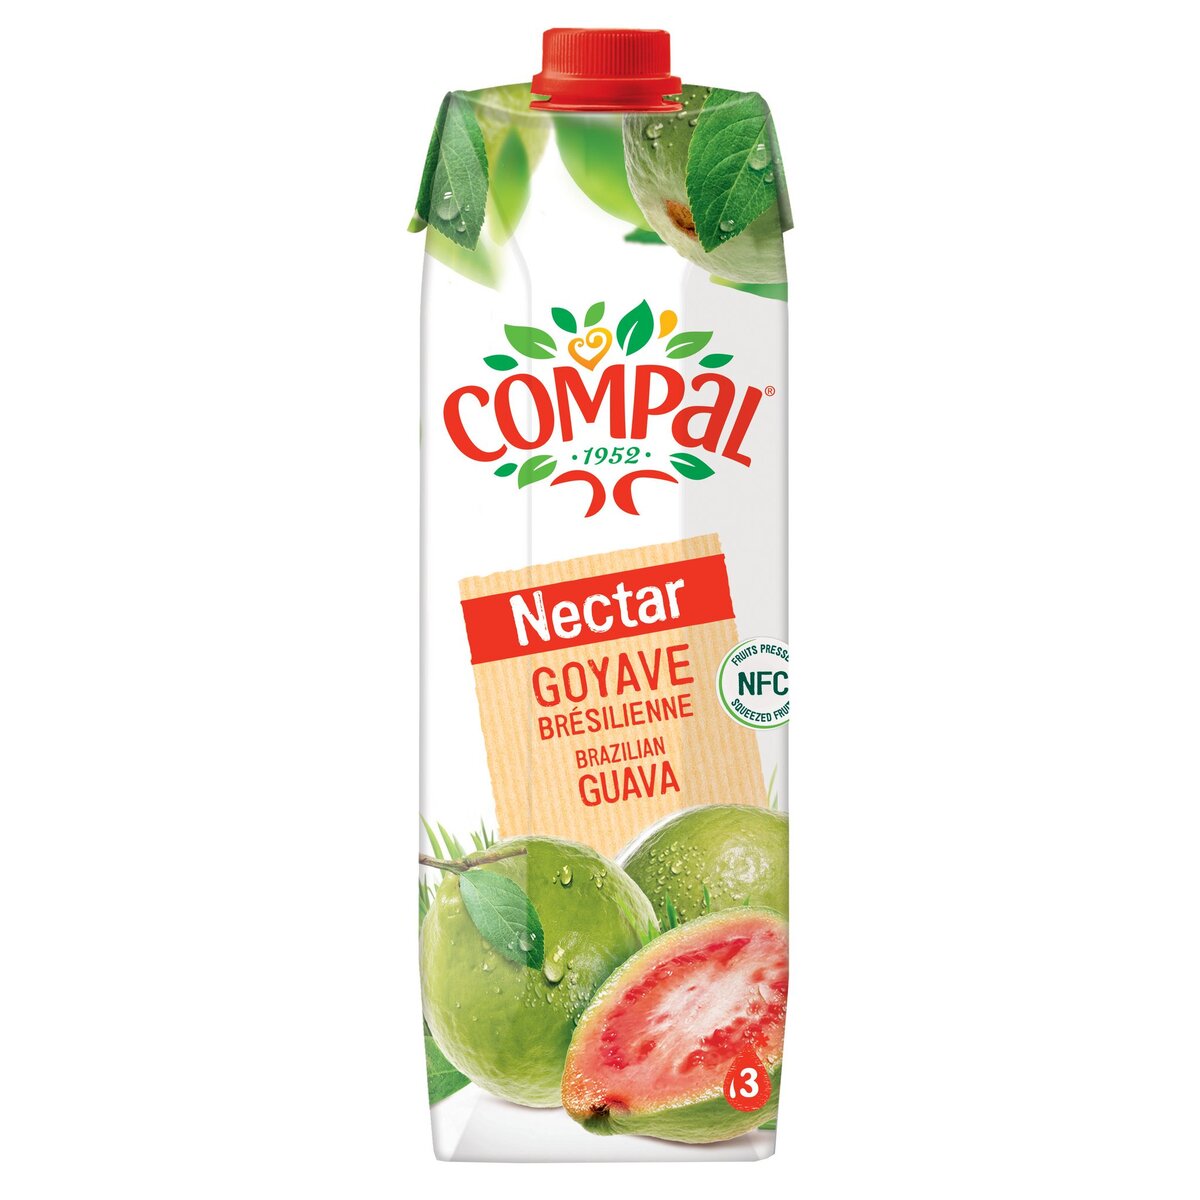 COMPAL Nectar goyave du Brésil brick 1l